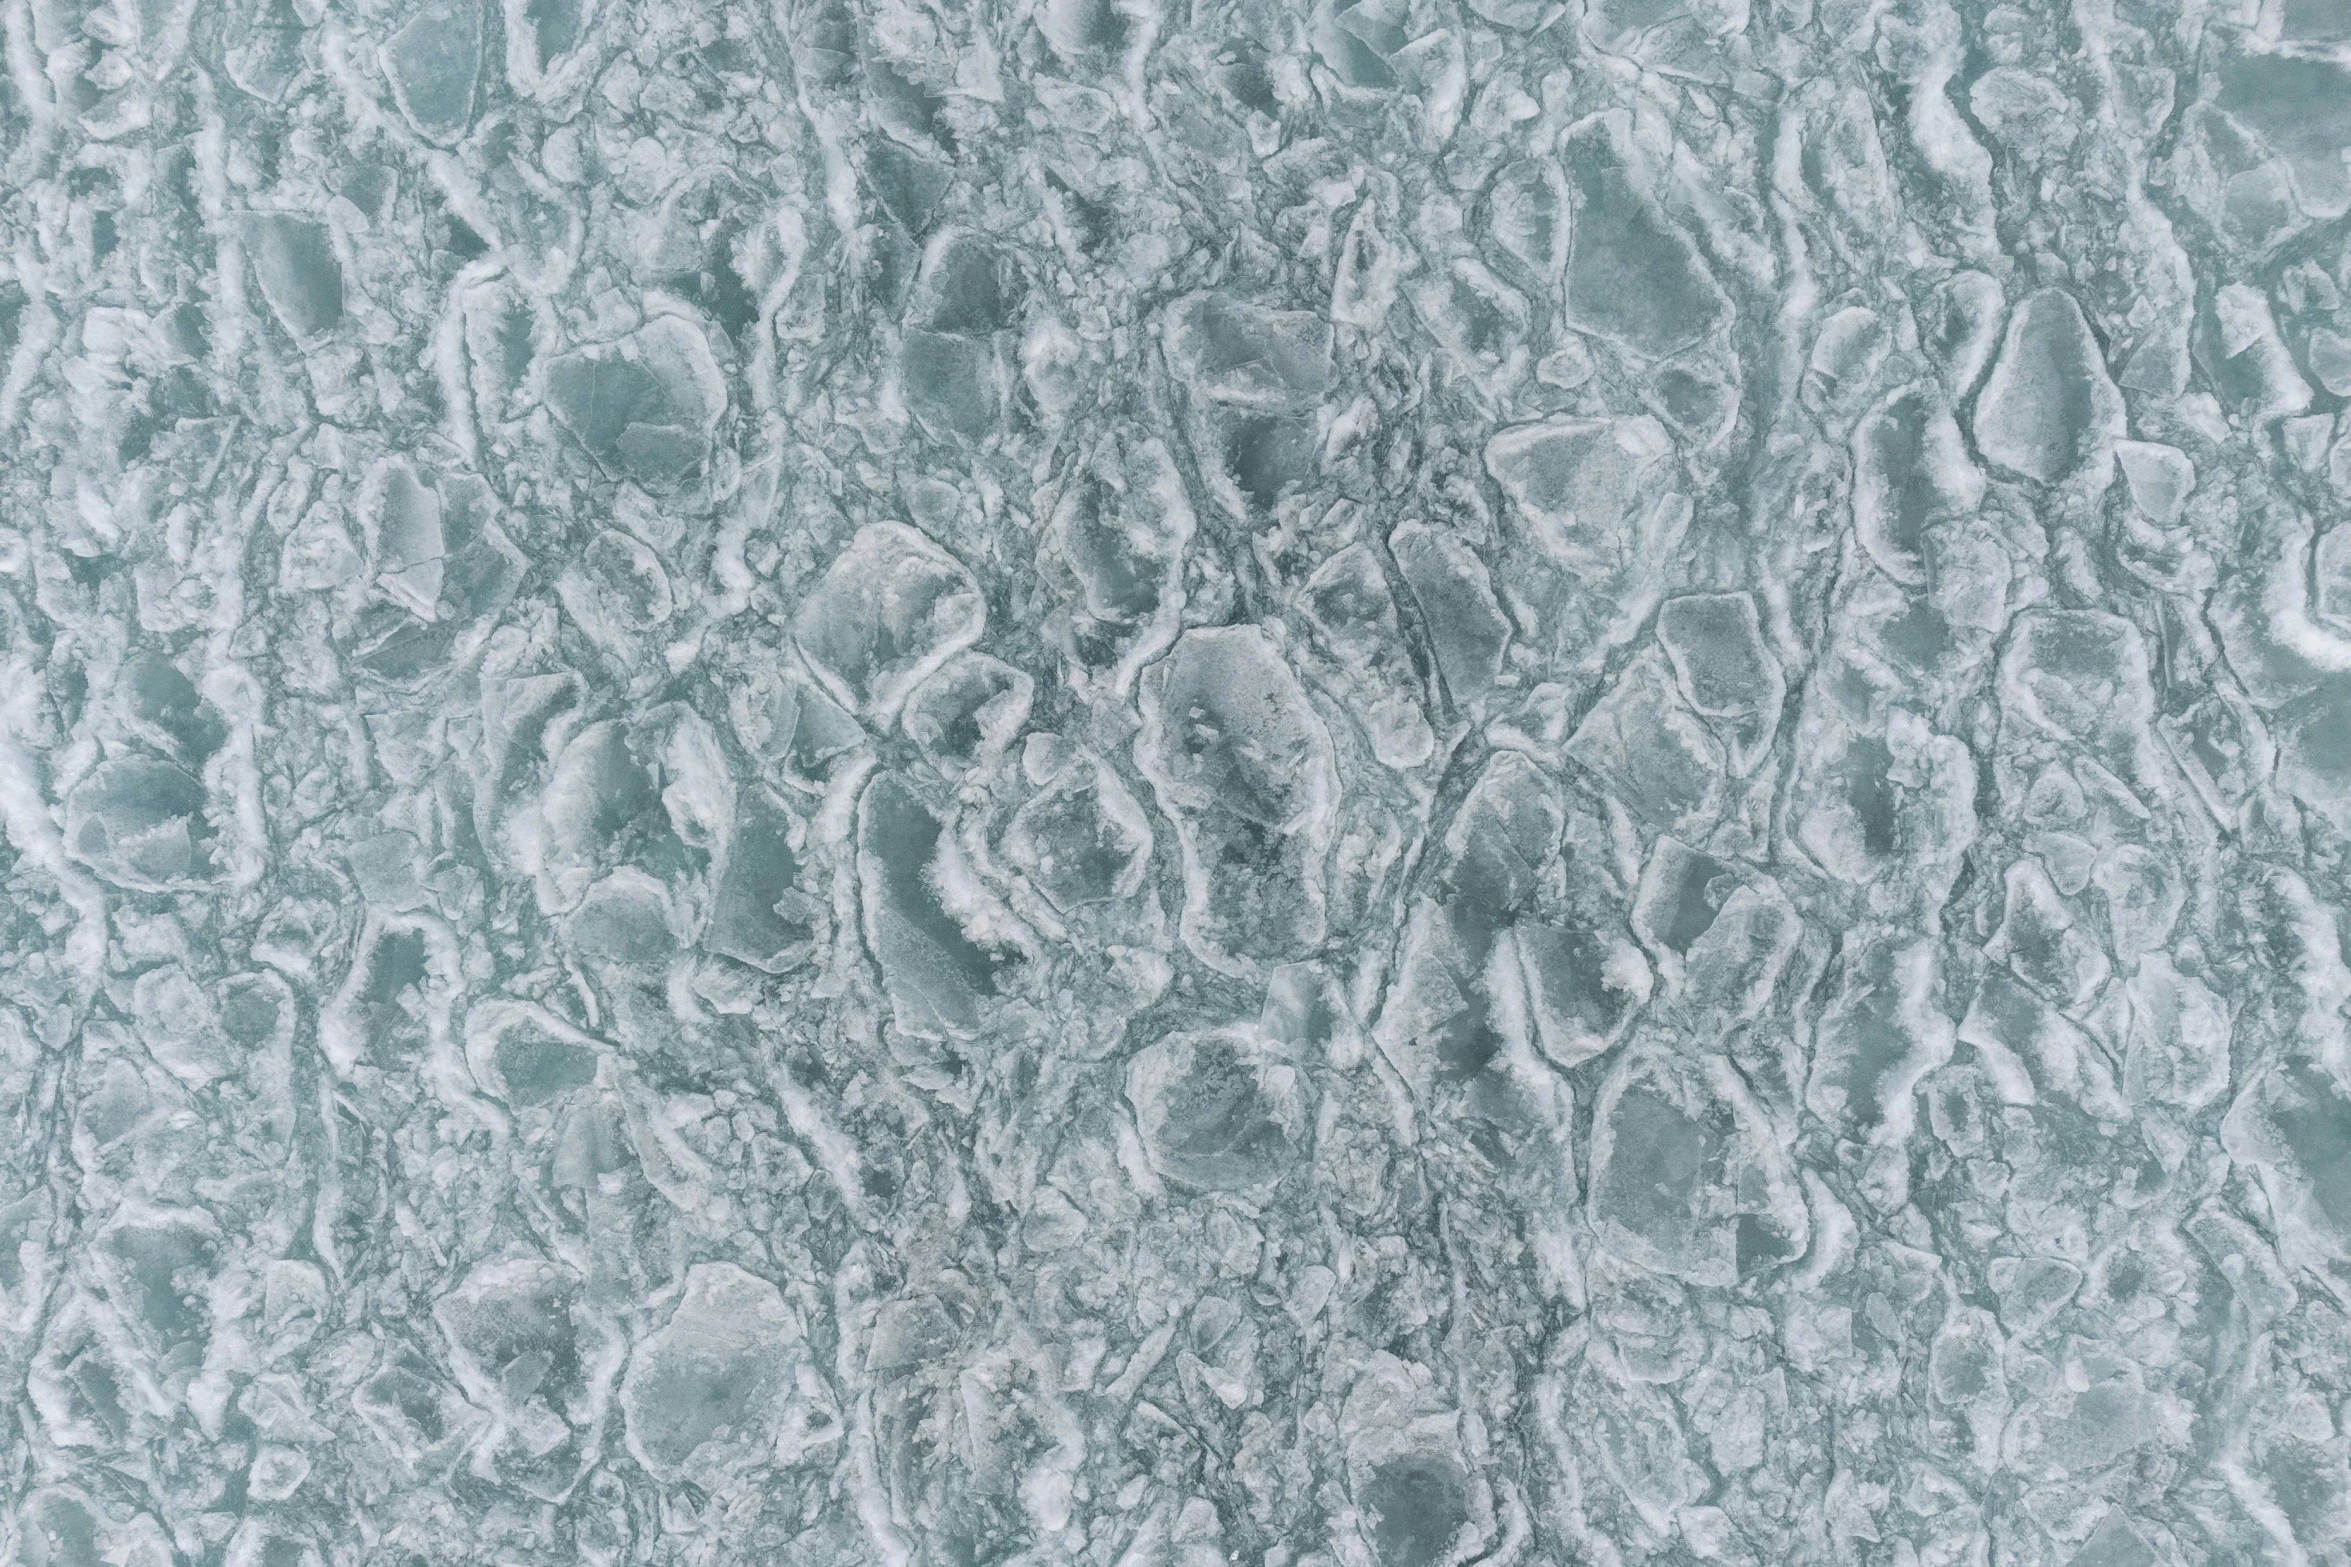 an abstract frozen wallpaper pattern